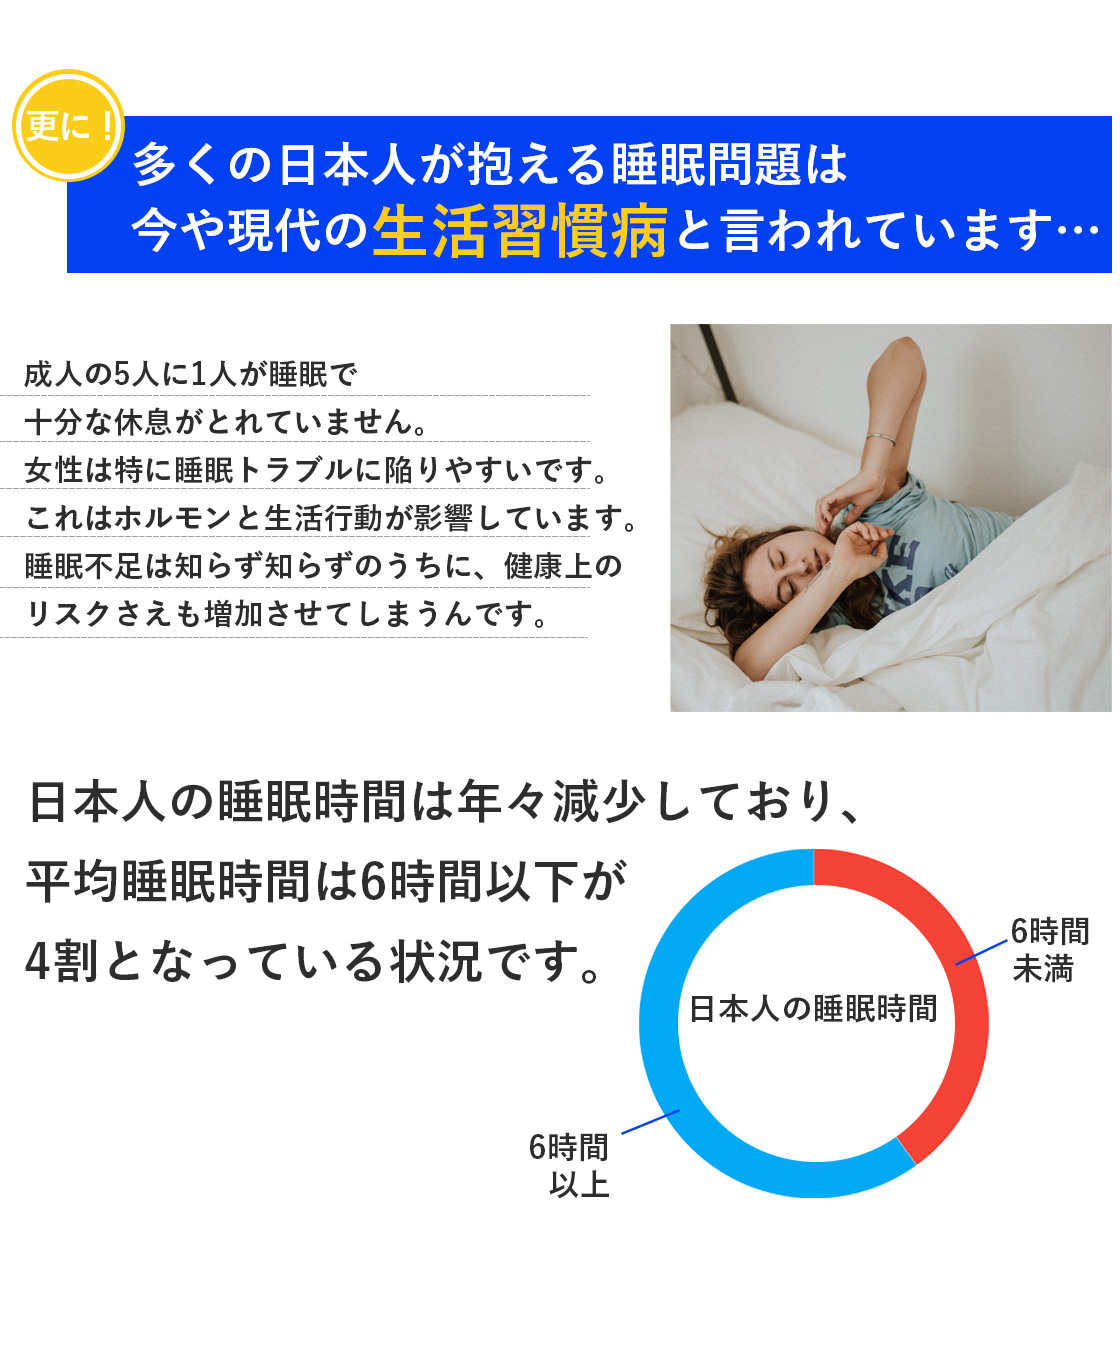 多くの日本人が抱える睡眠の悩みは、現代の生活習慣病